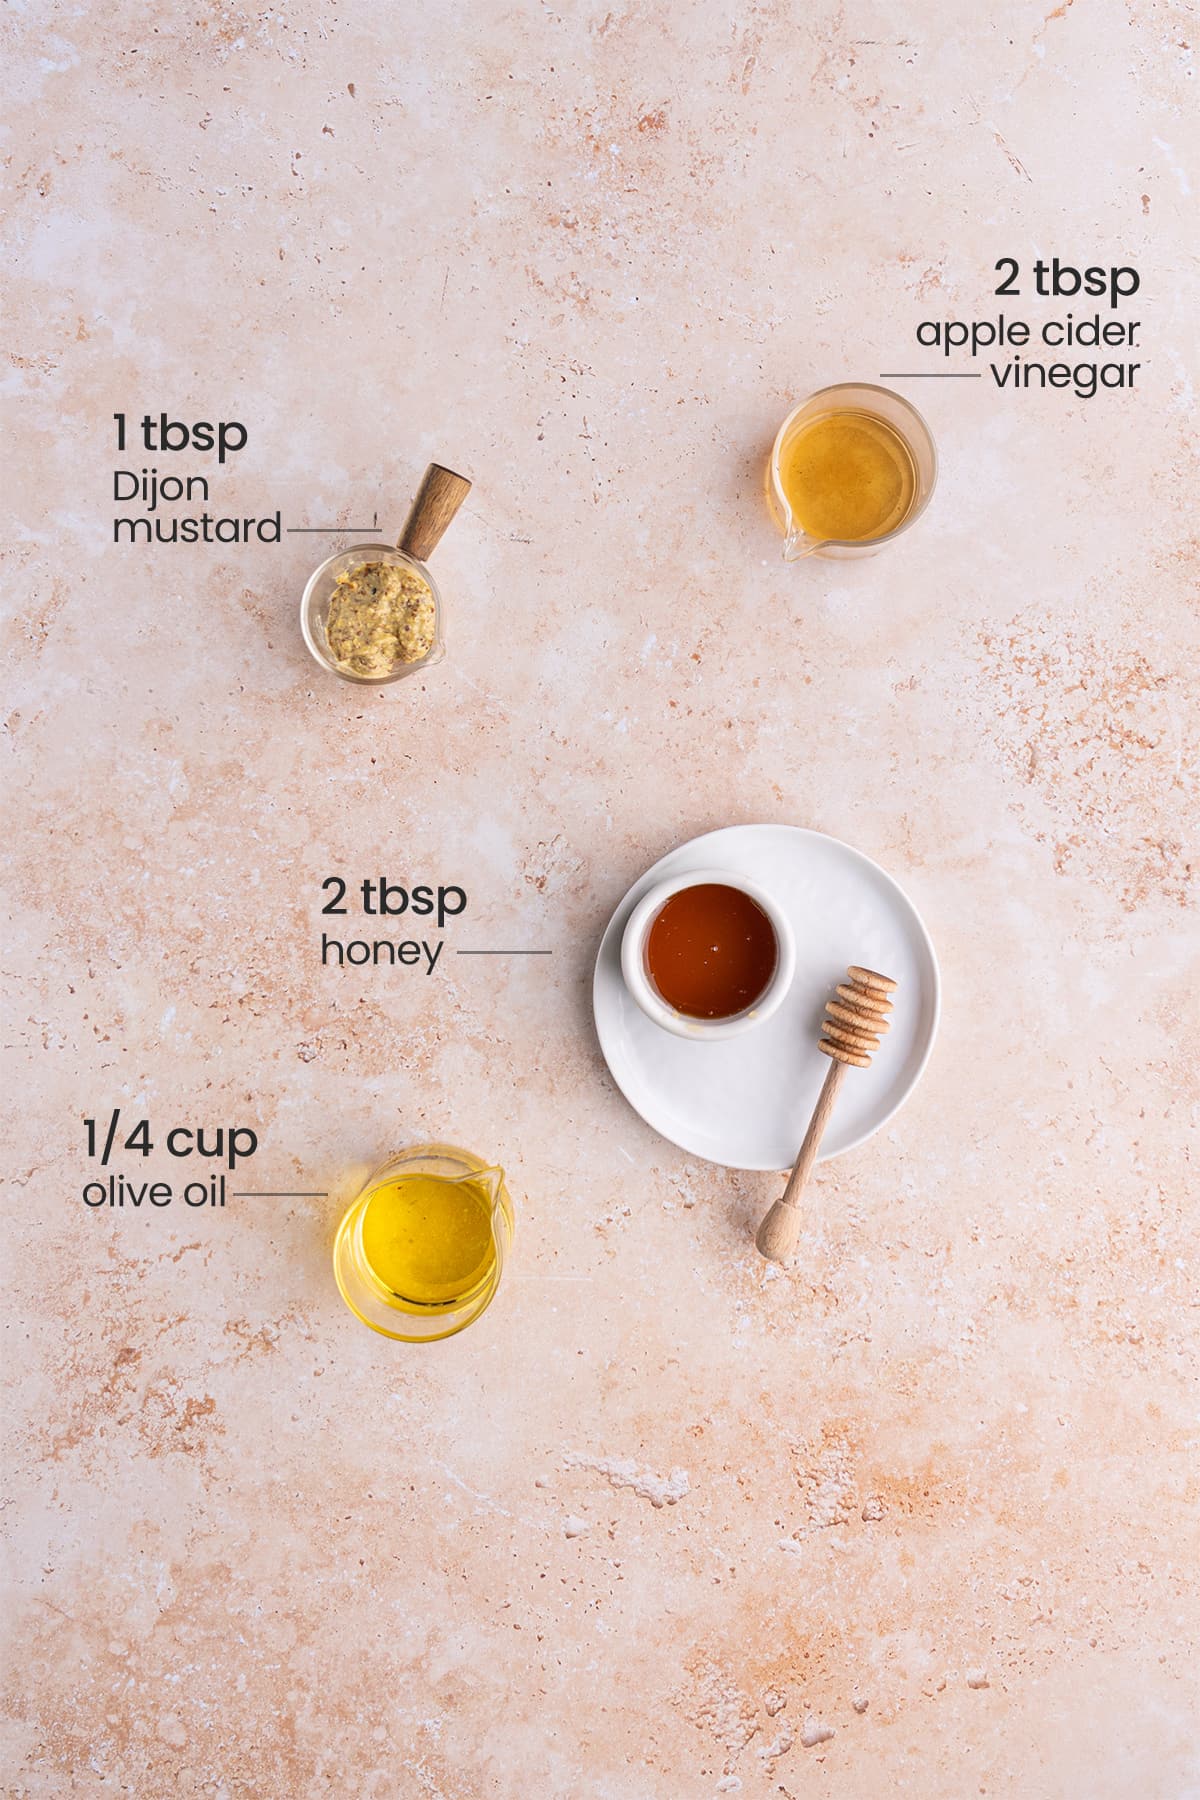 ingredients for honey Dijon vinaigrette - apple cider vinegar, Dijon mustard, honey, olive oil